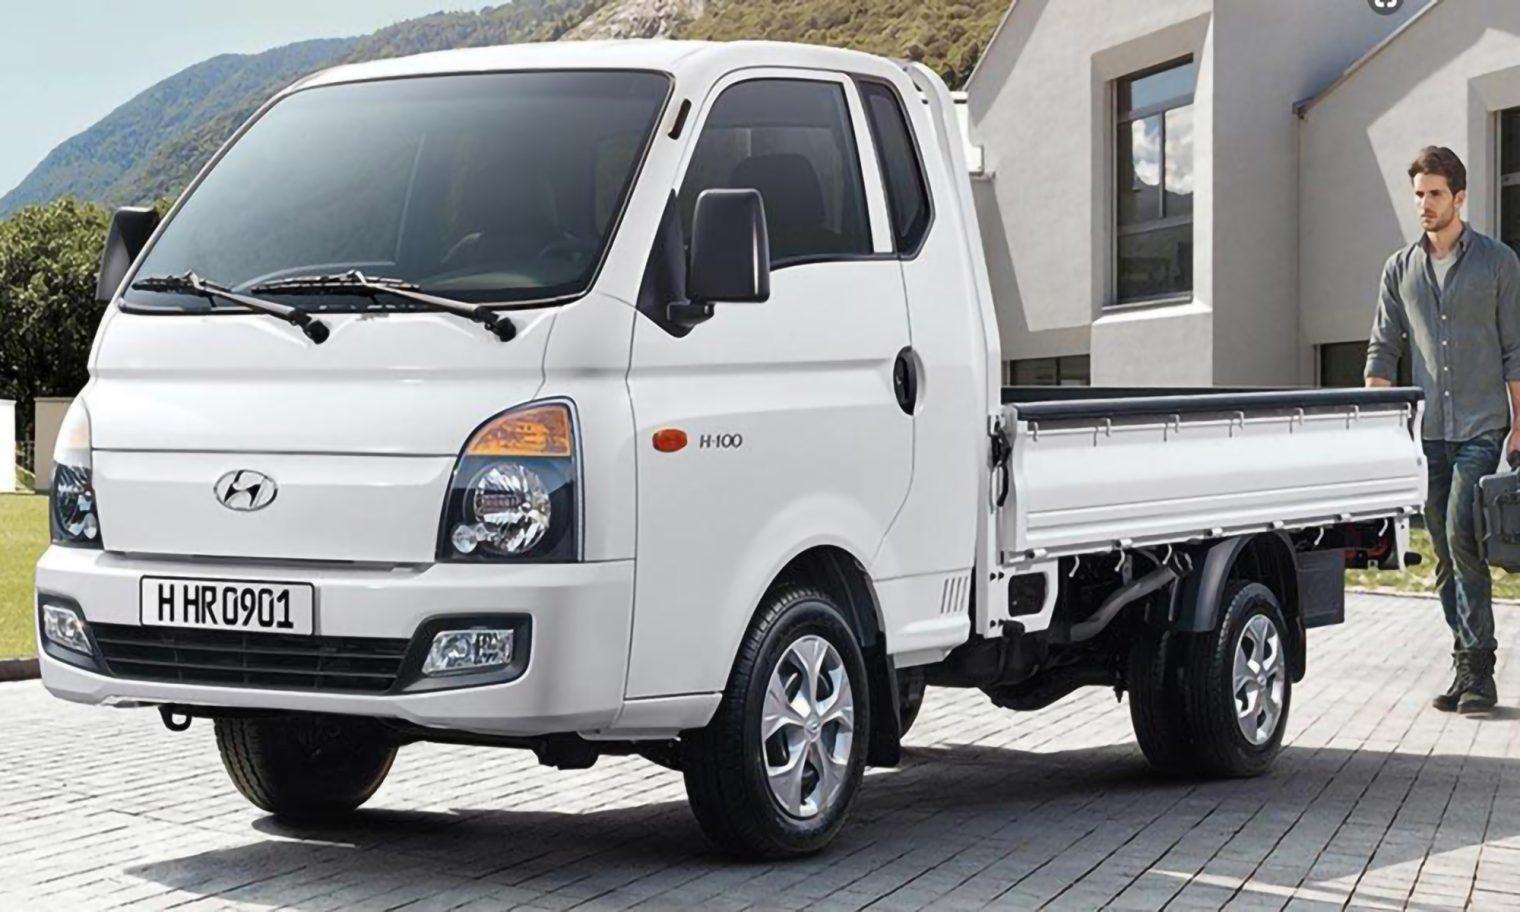 Xe tải 25 tấn Hyundai  Bảng giá xe tải 2 tấn và 25 tấn Hyundai tốt nhất